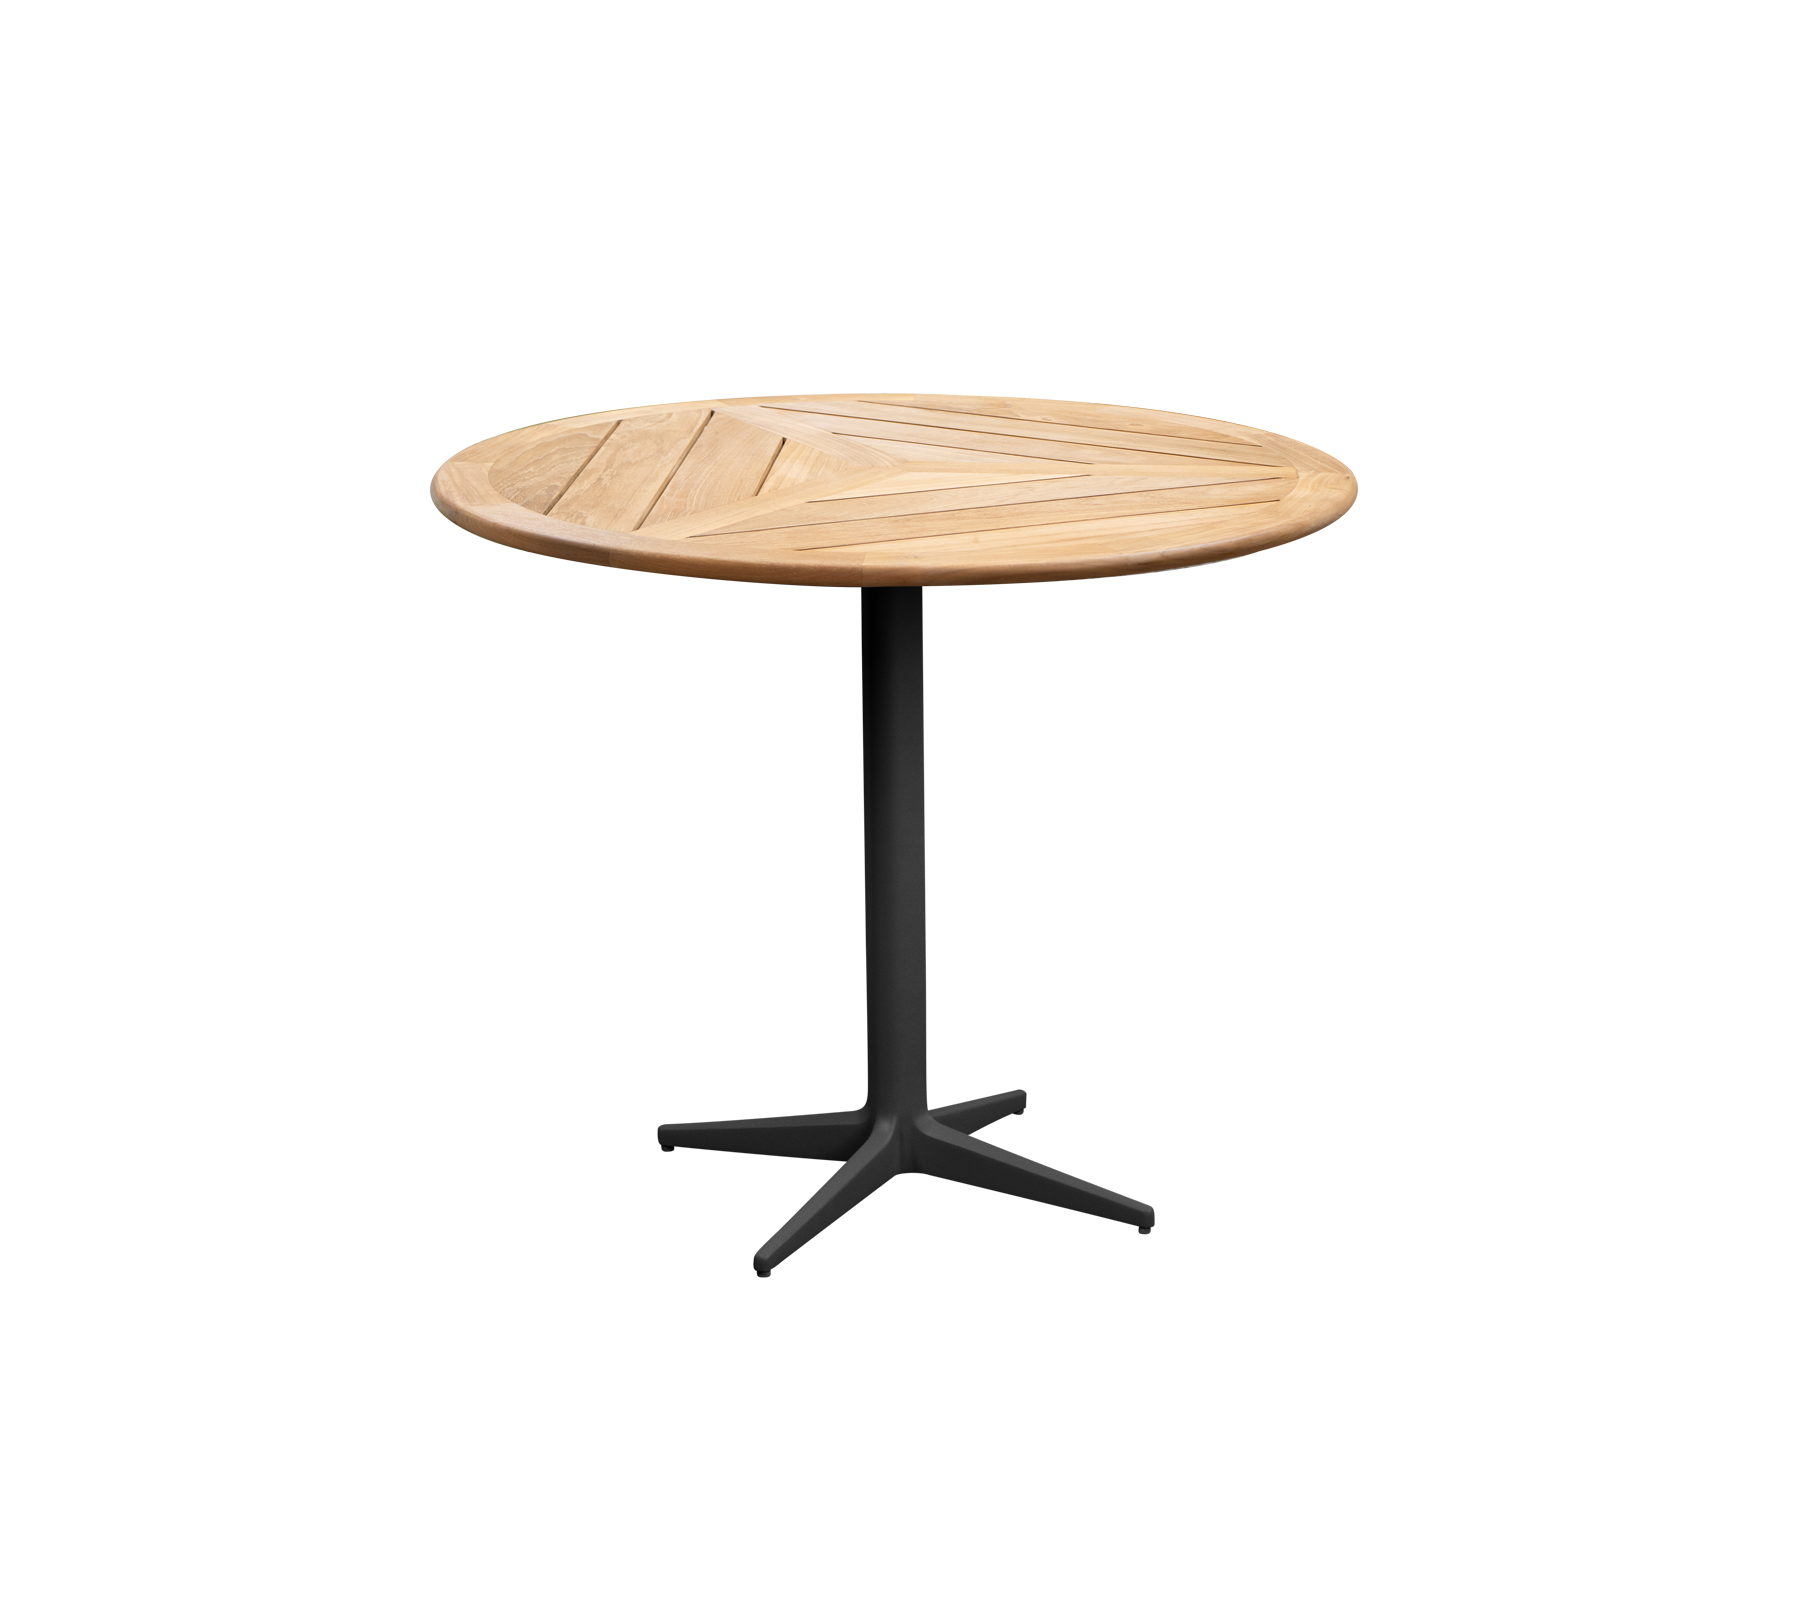 Drop table diam. 80 cm